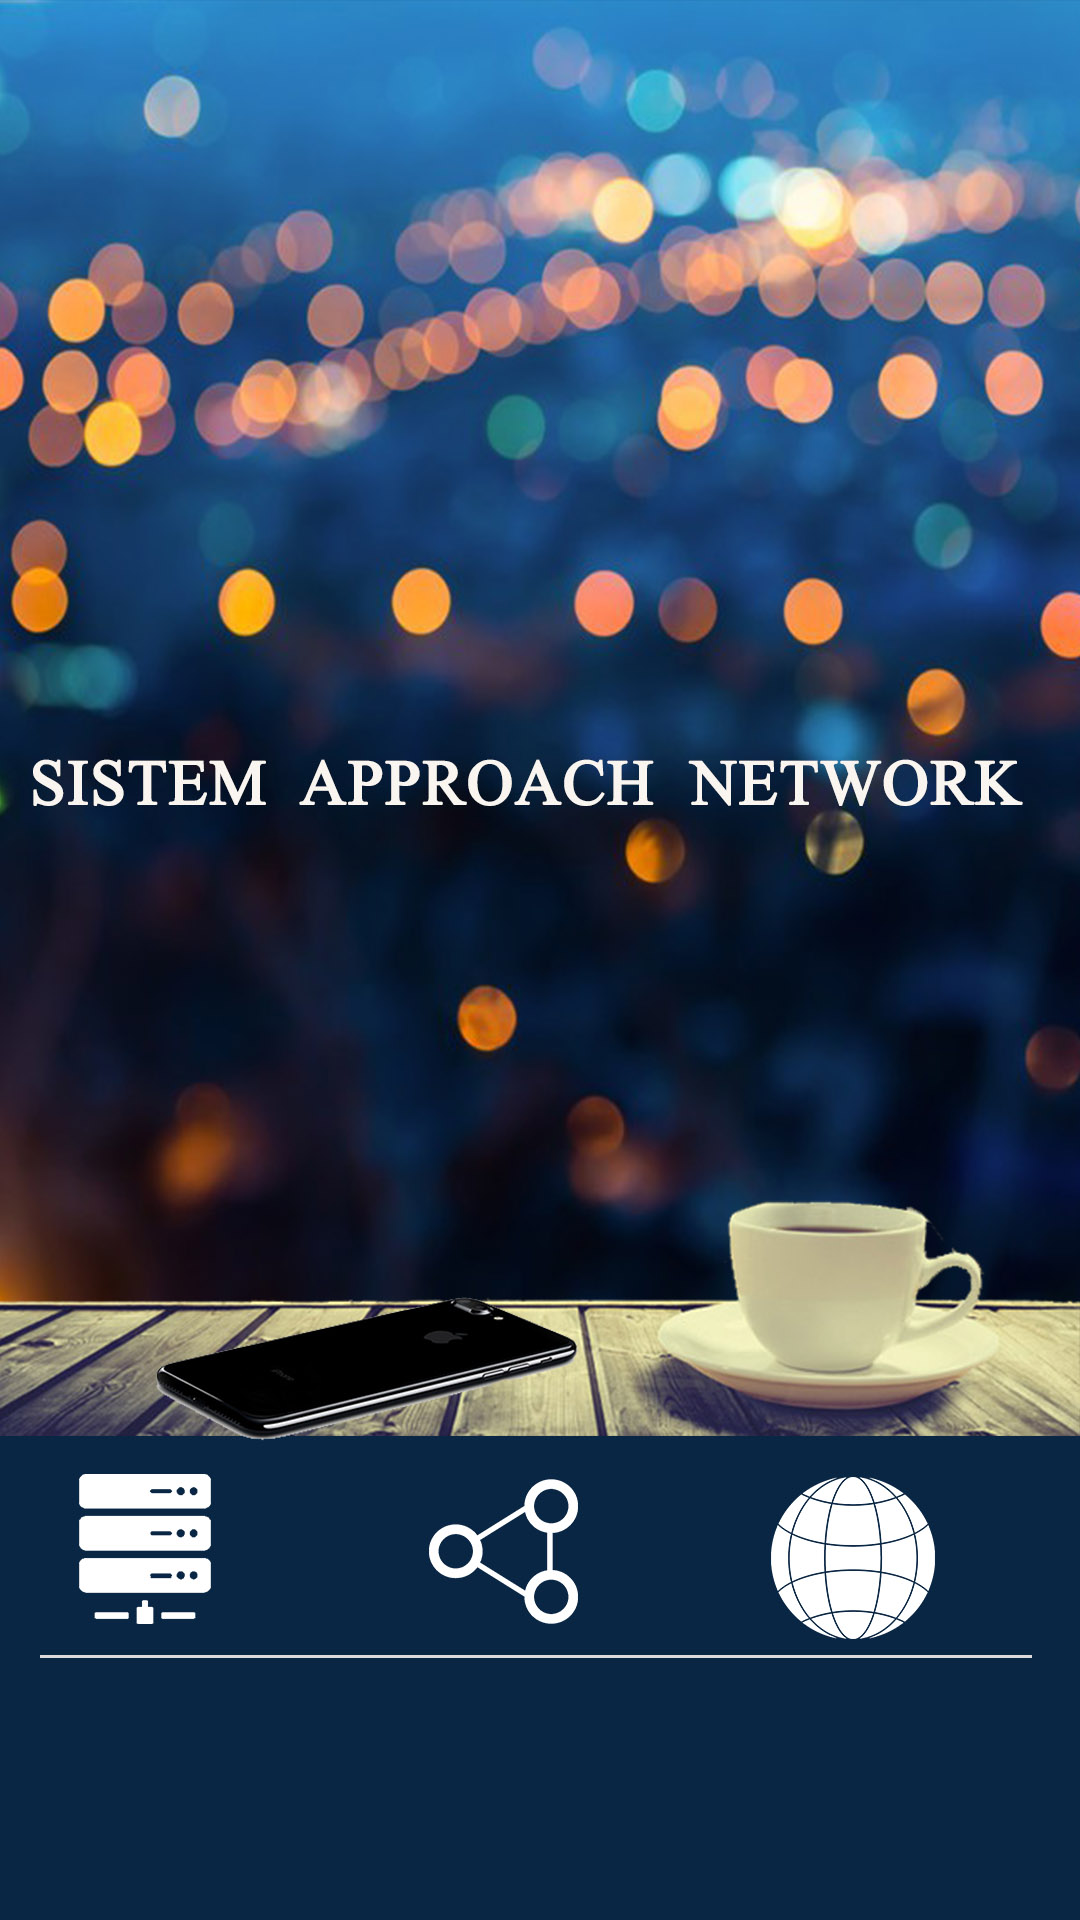 ¿Que es el sistema Approach network?